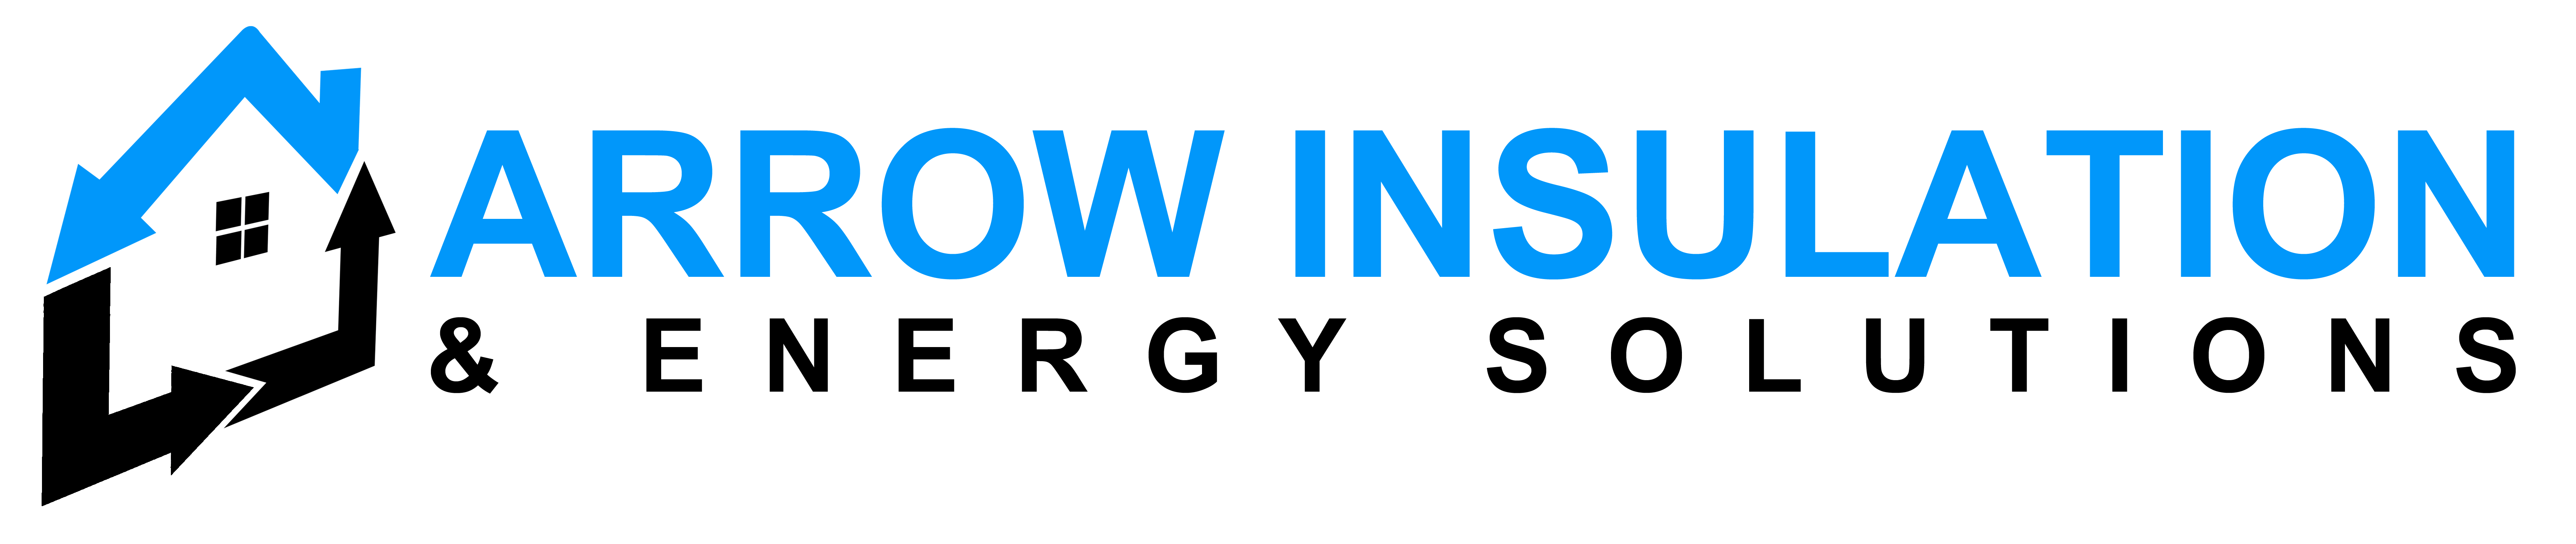 arrow insulation & Energy Solutions logo